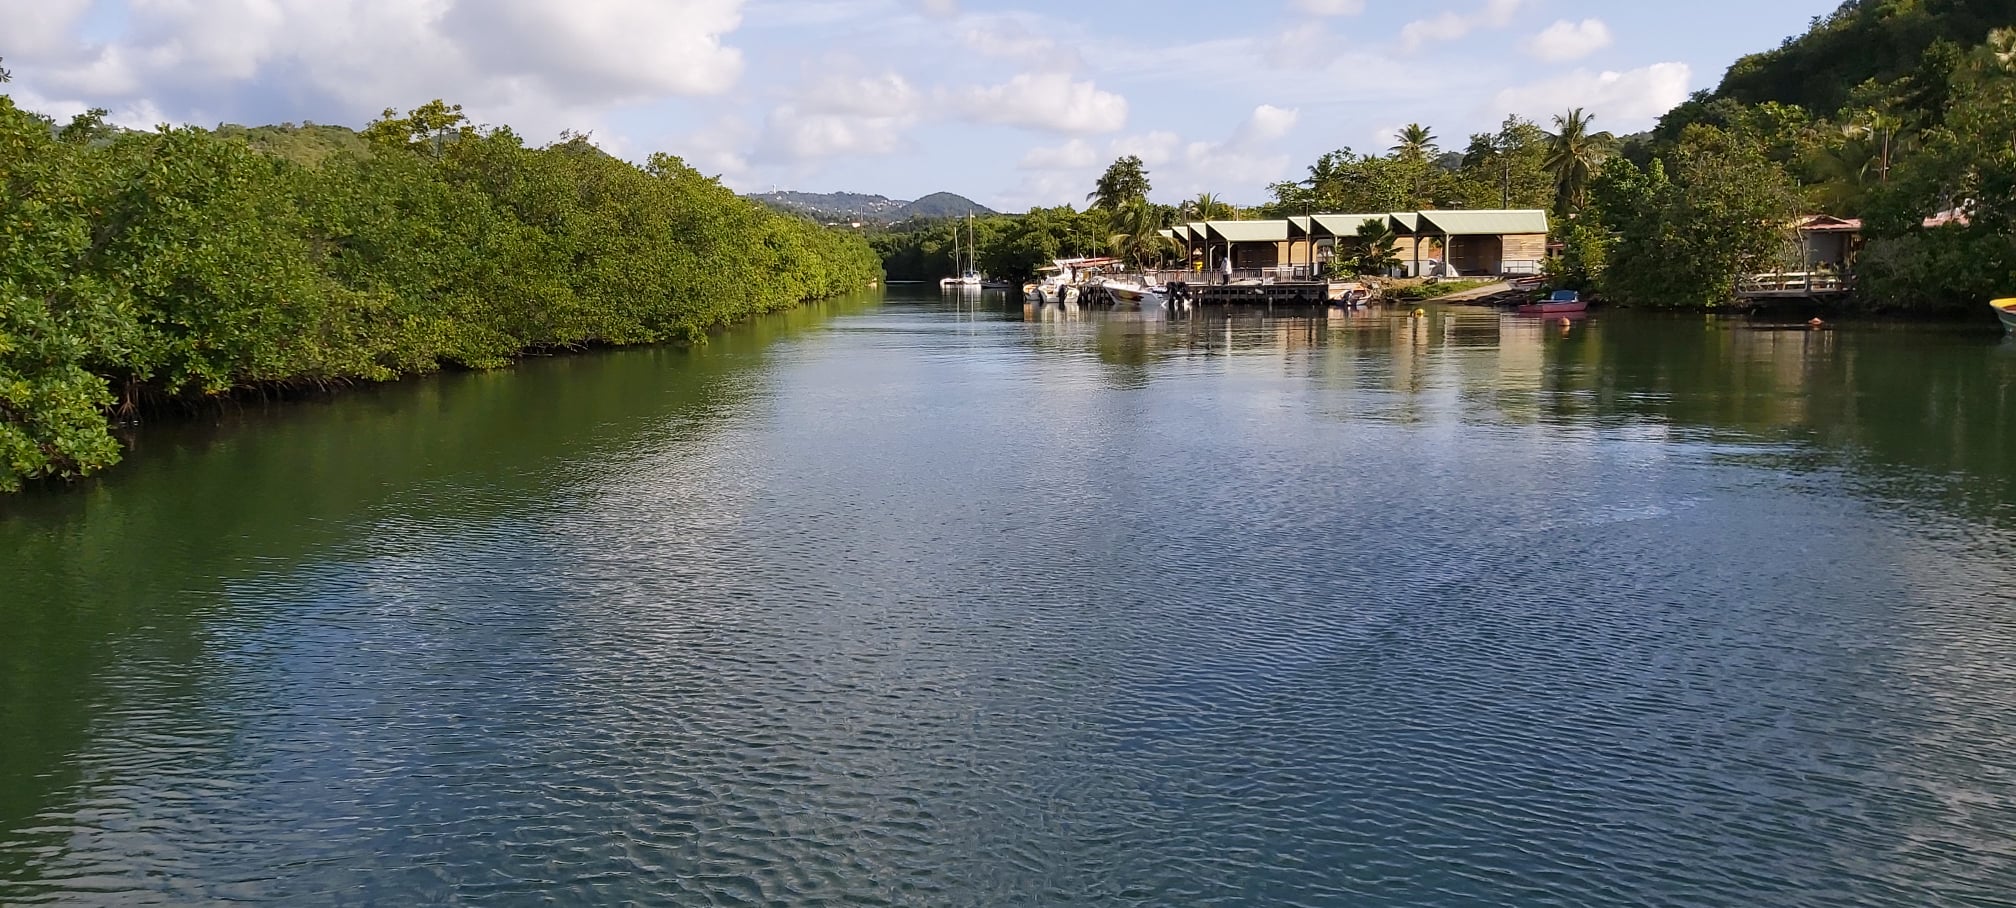 UNITY LINES Caraïbes - Bateau - croisiere - journée - mangrove - riviere pilote - martinique - Antilles - Caraibes